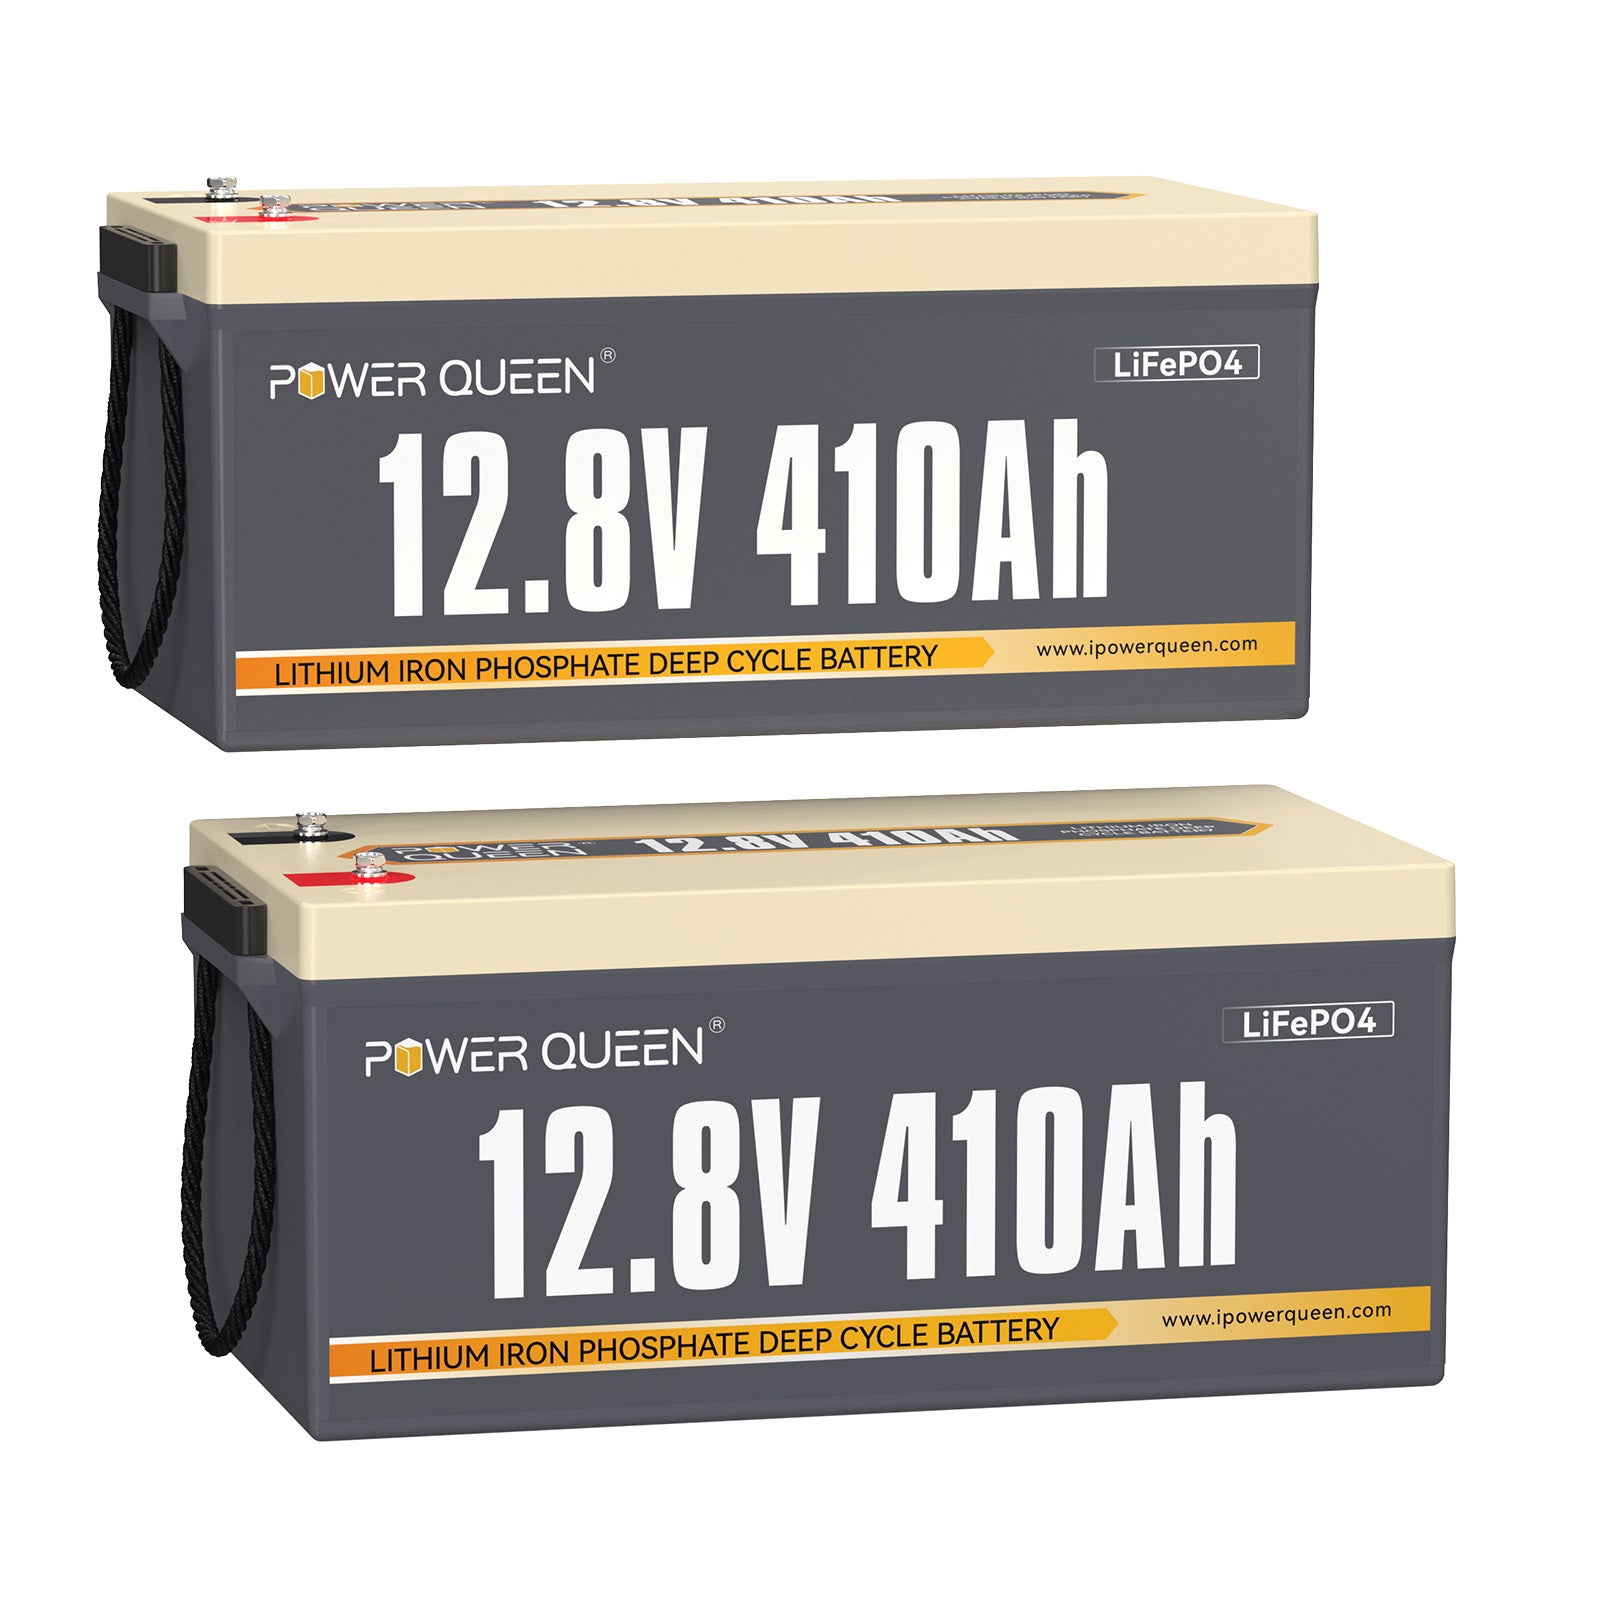 【0% VAT】Power Queen 12.8V 410Ah LiFePO4 battery, Built-in 250A BMS